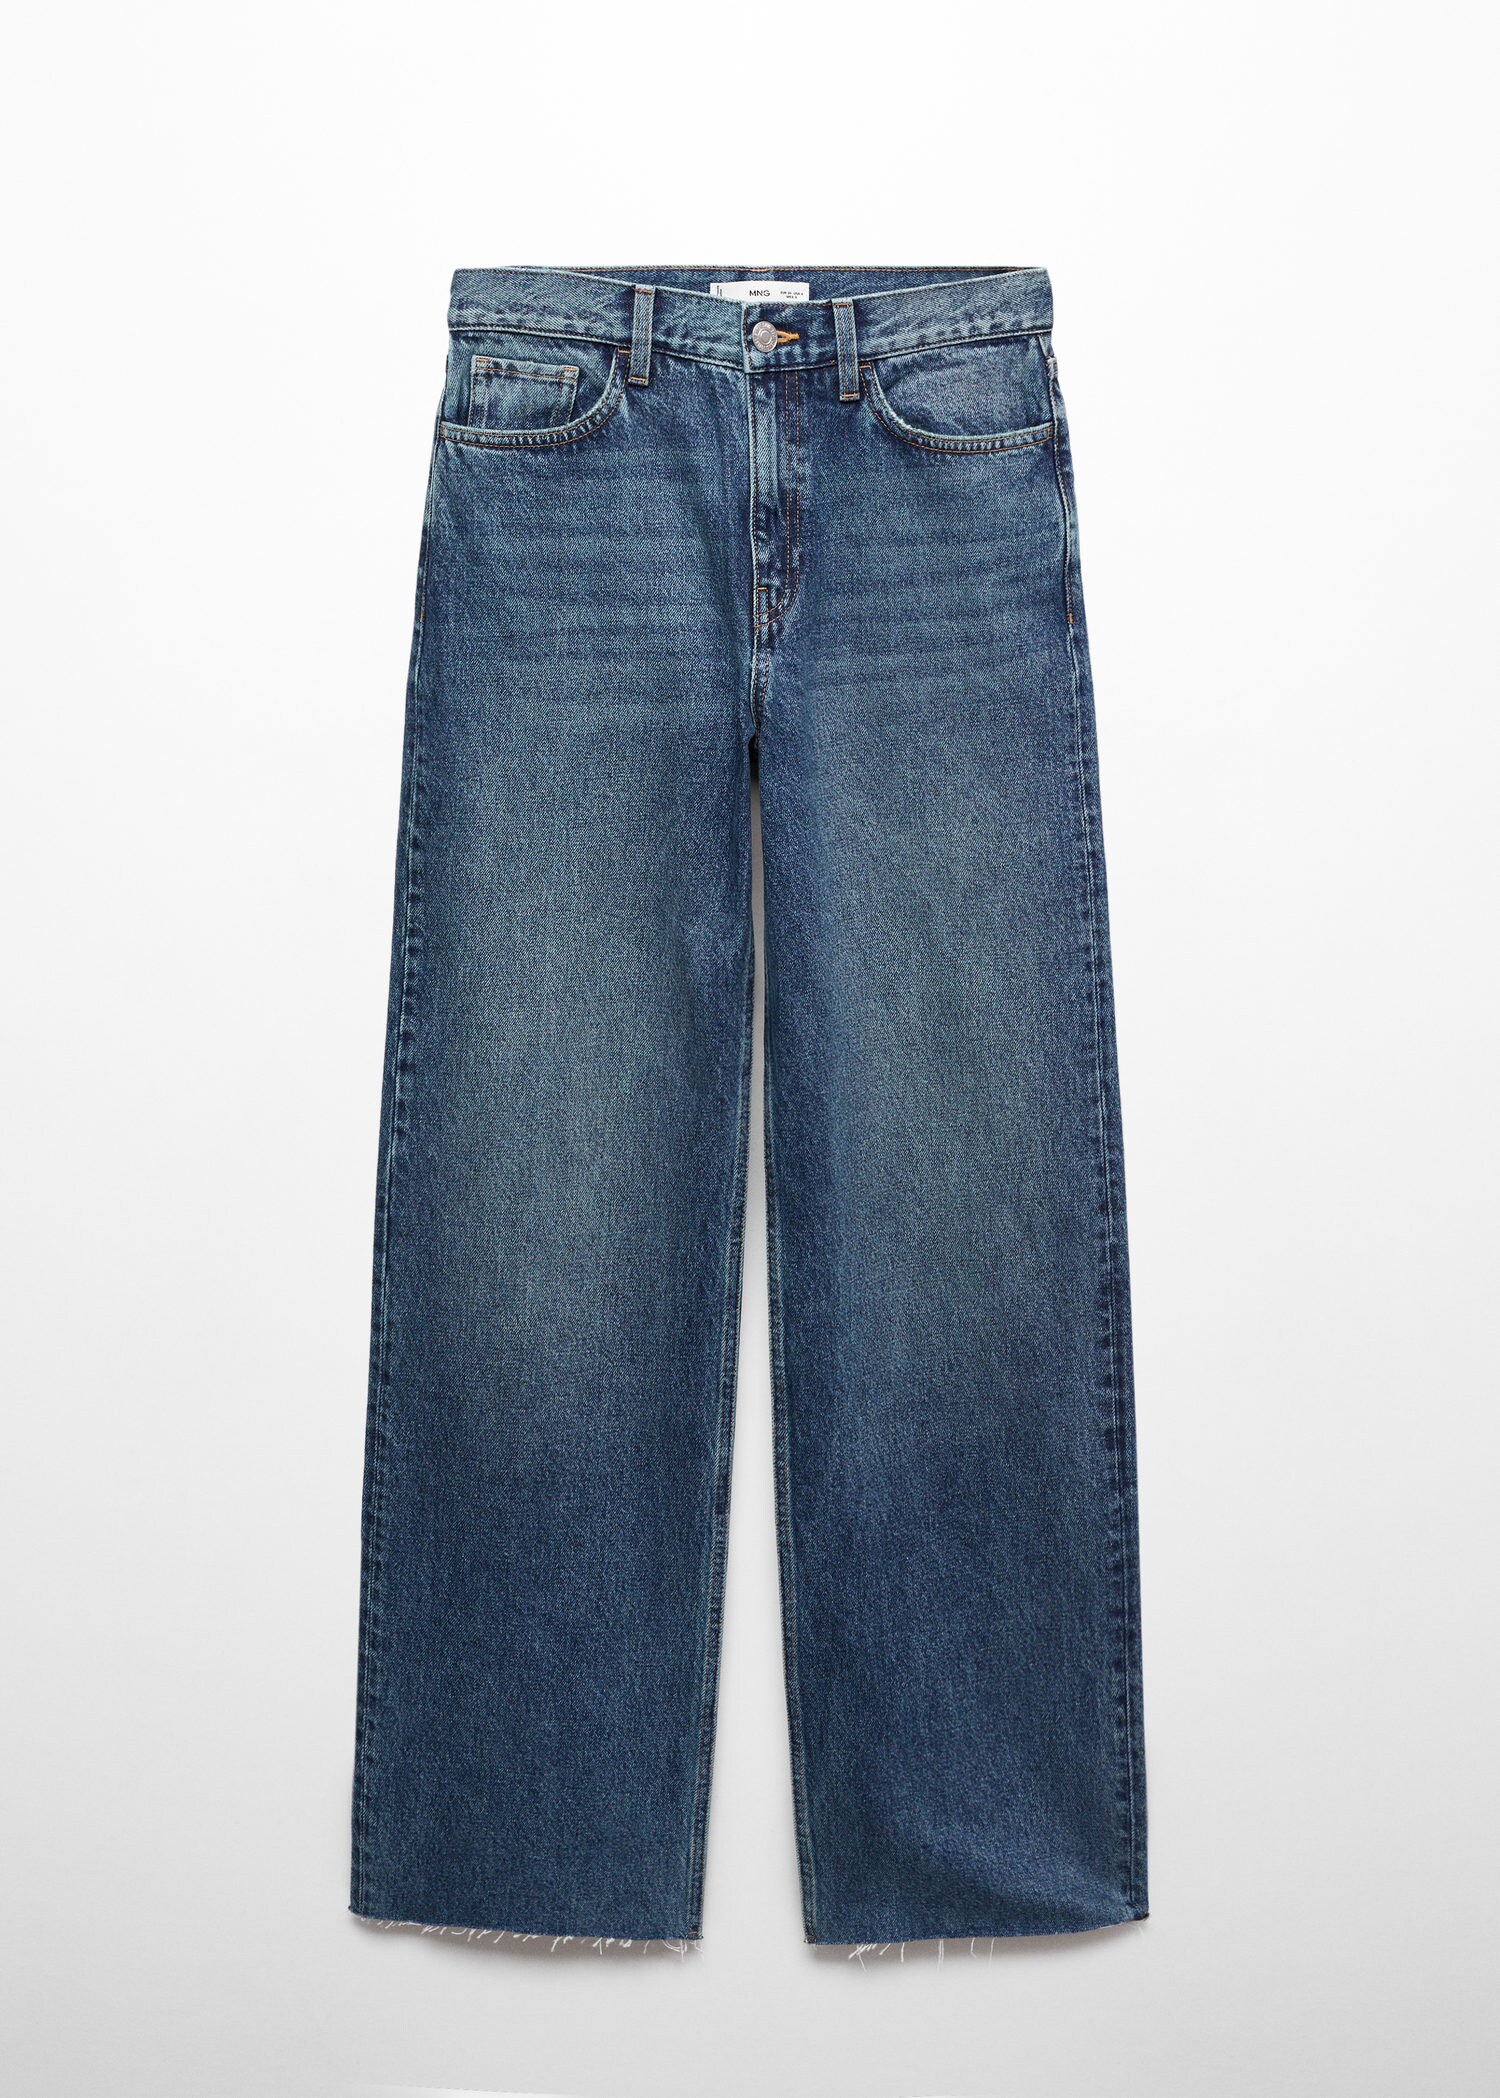 High-waist wideleg jeans | MANGO